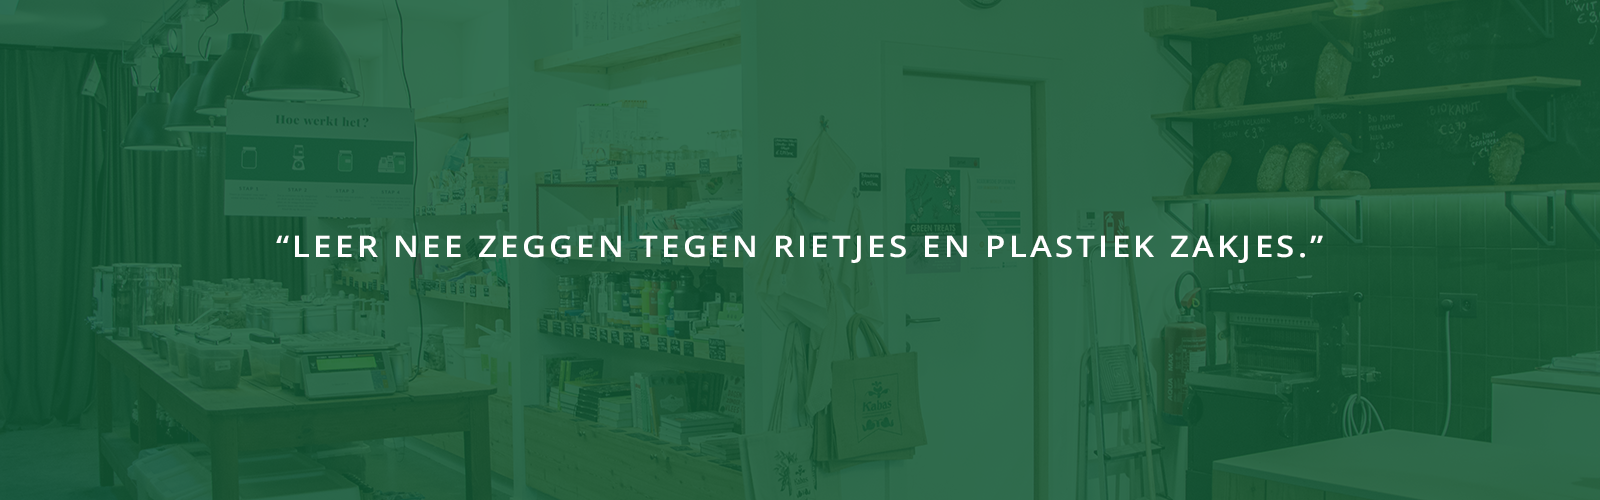 Anneleen van verpakkingsvrije winkel Kabas: ‘Leer nee zeggen tegen rietjes en plastic zakjes’